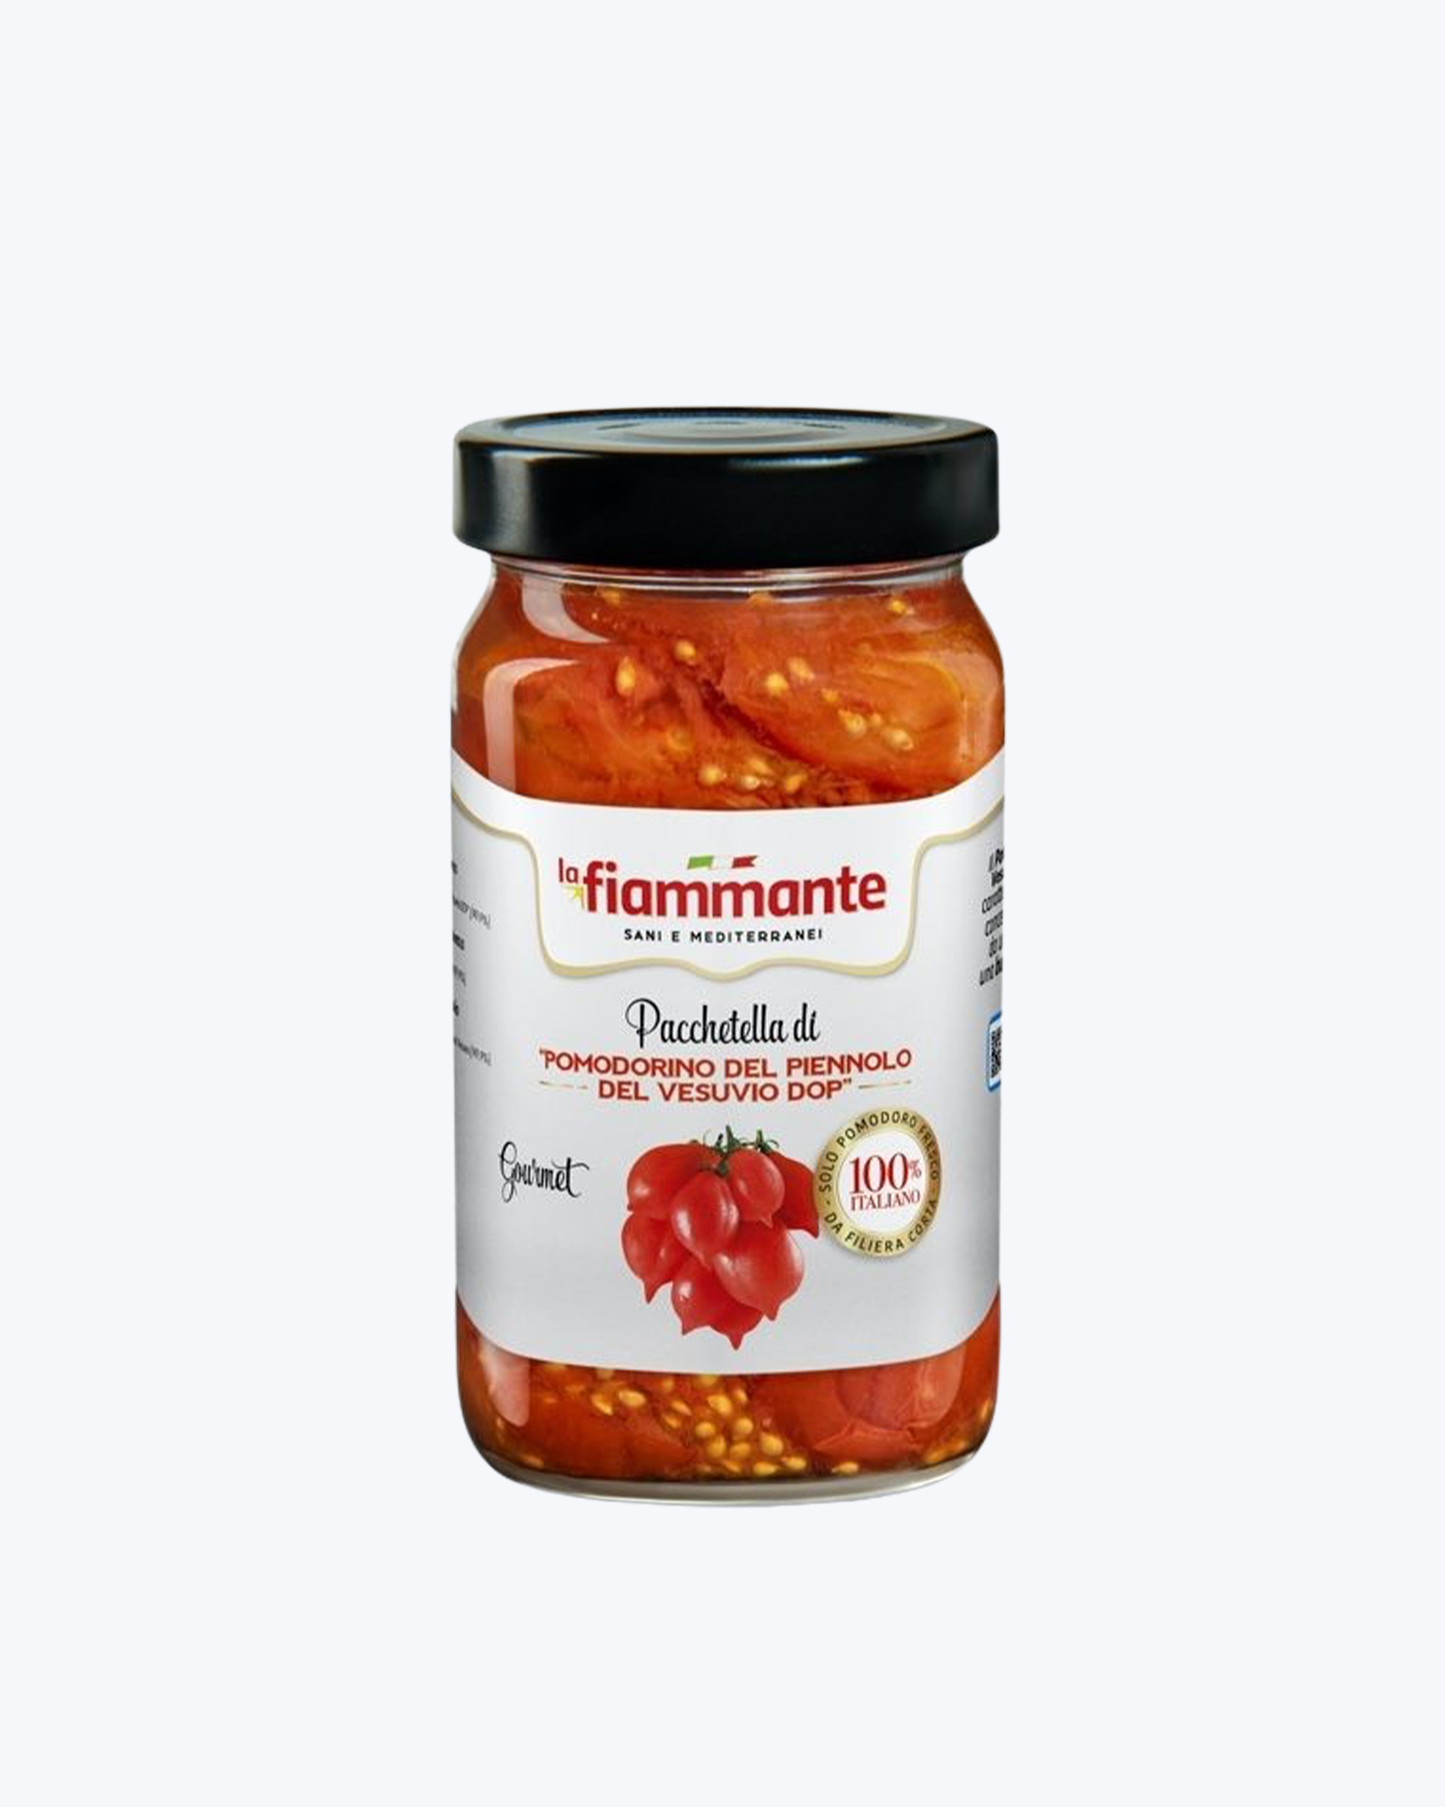 Sarkanie tomāti Piennolo del Vesuvio DOP 450g